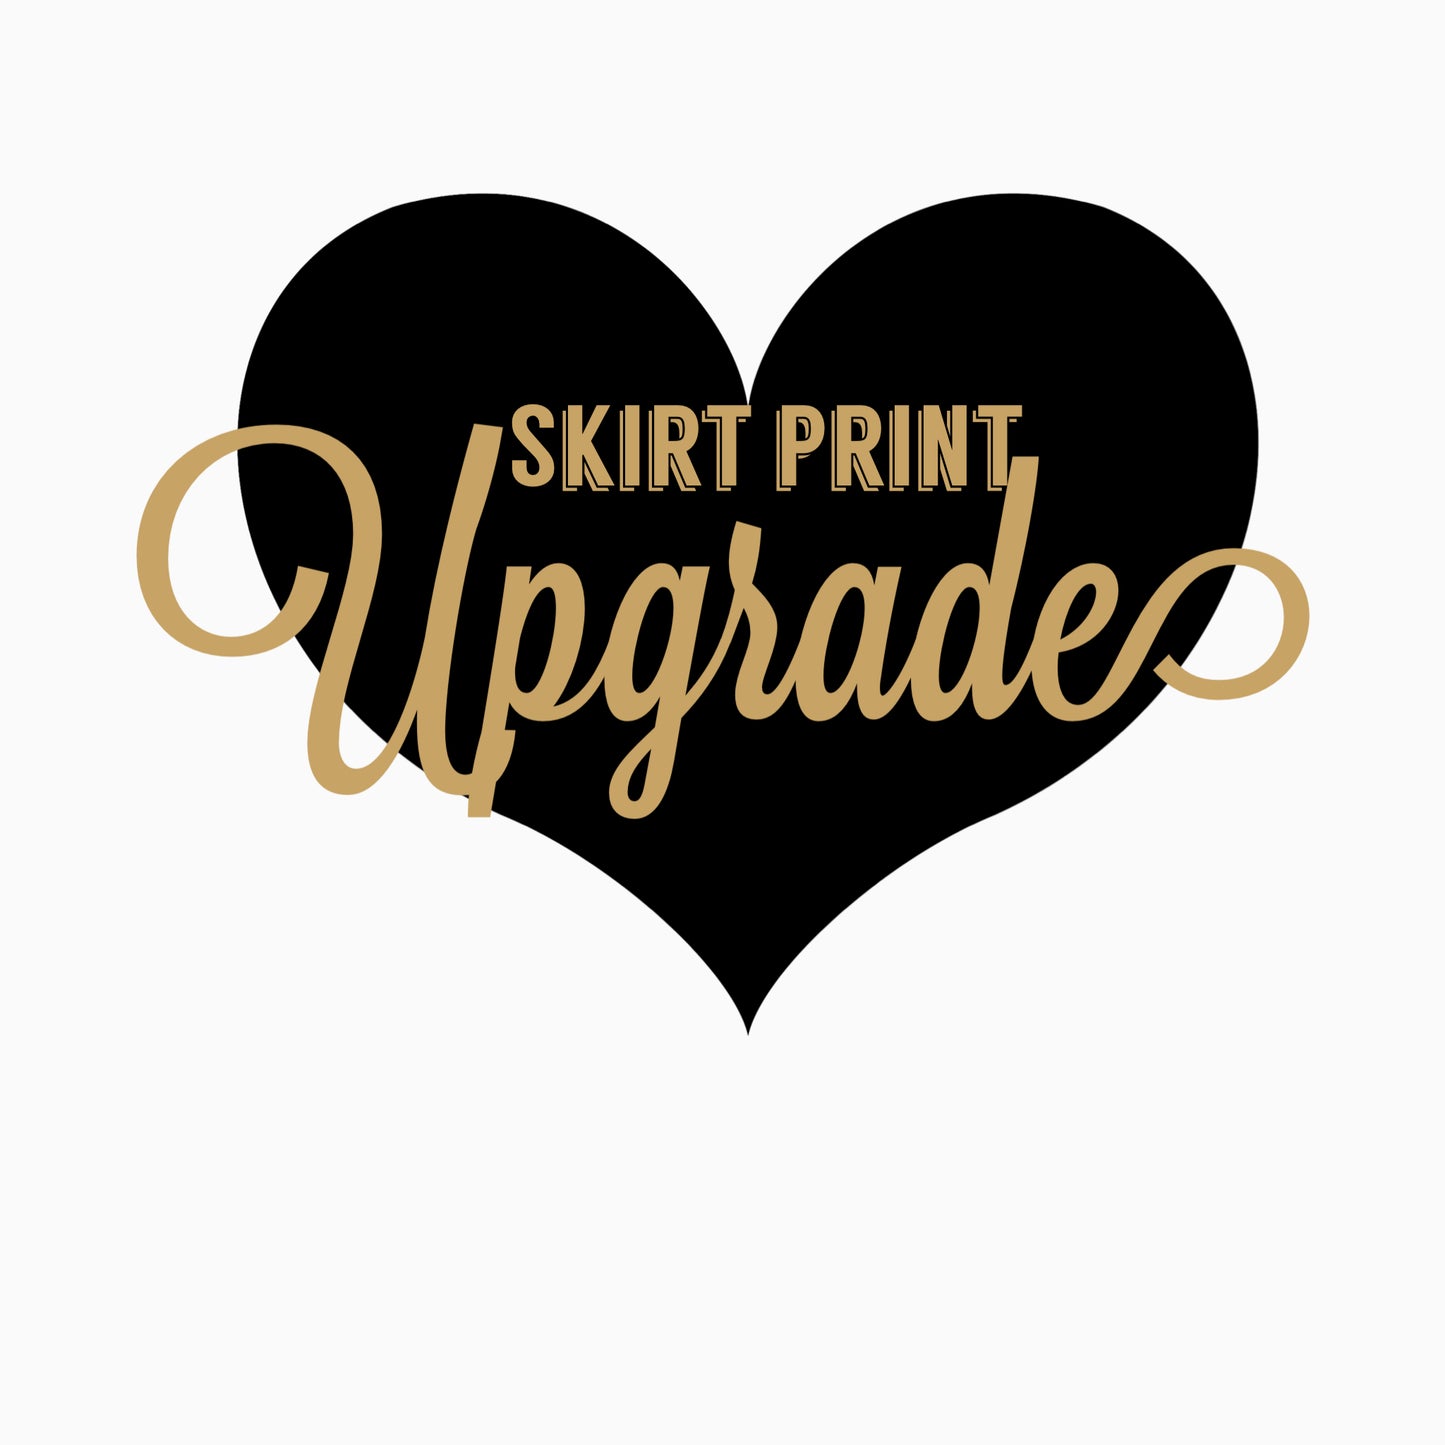 Skirt print upgrade * do not delete